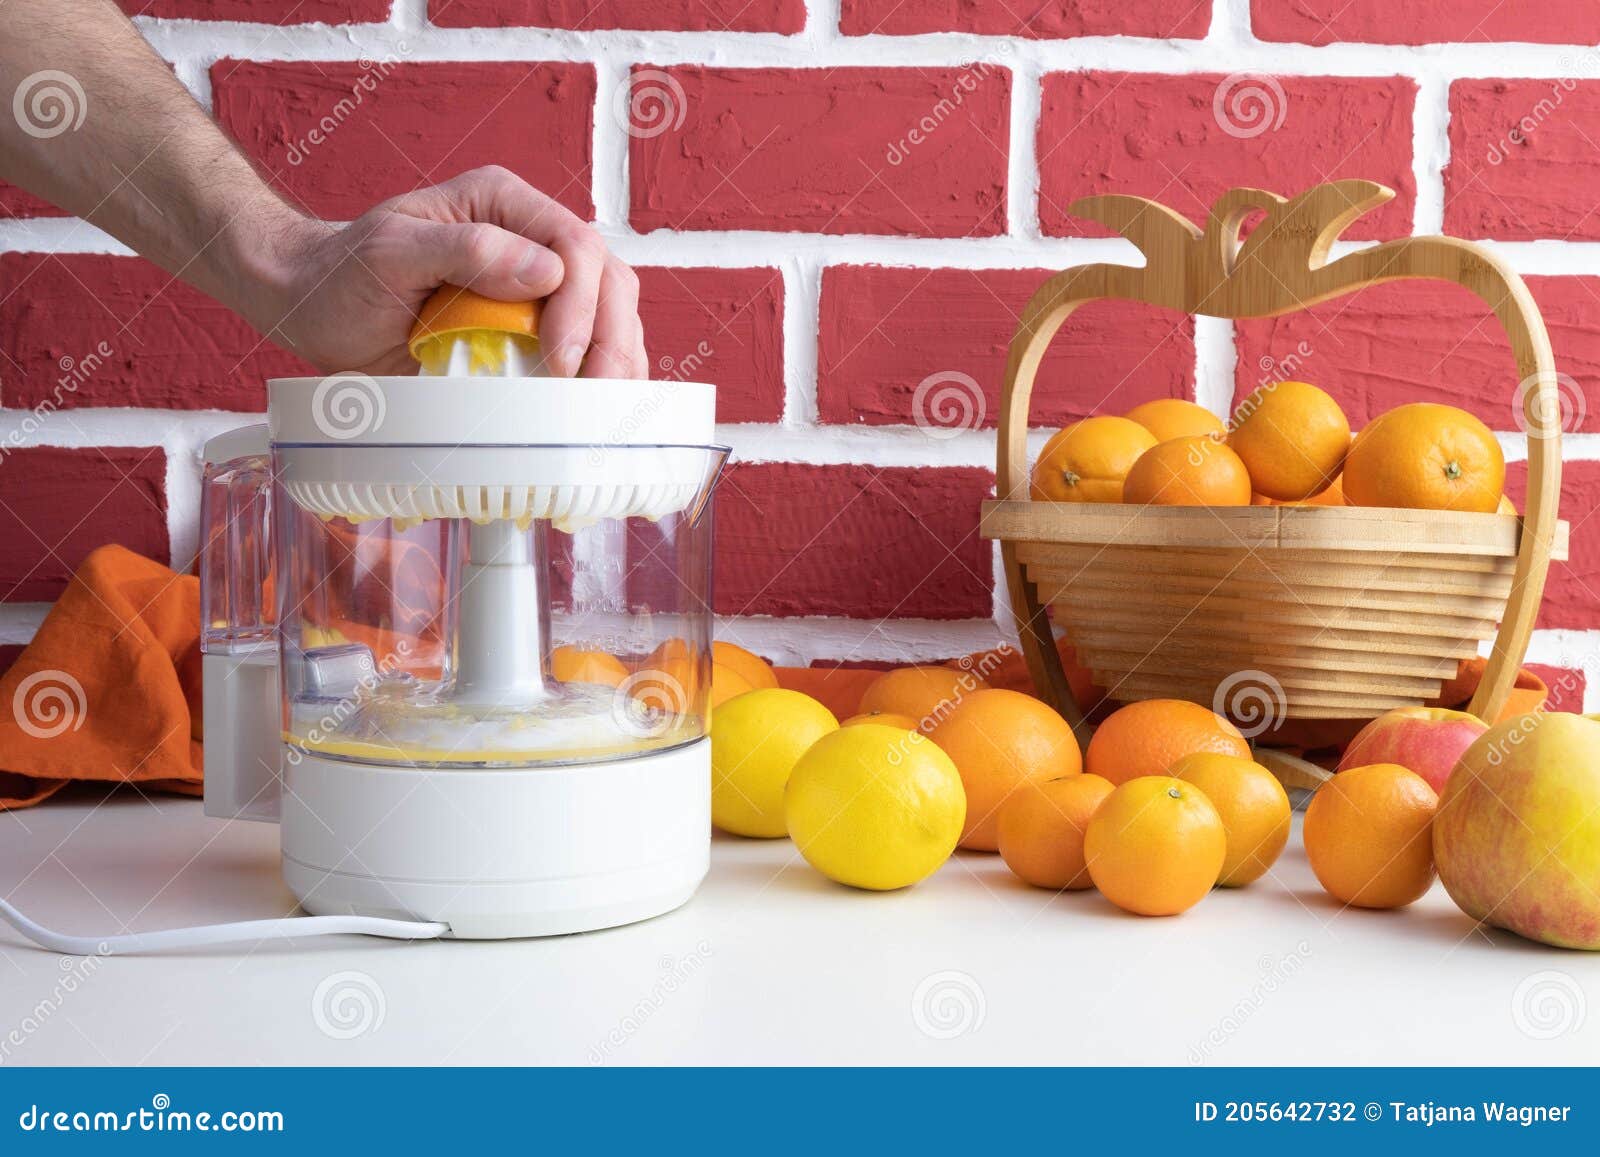 Le Jus D'orange De Compression Sur Un Presse-citron Il Y a Beaucoup  D'oranges Et Les Fruits Sur La Table Photo stock - Image du lame, fermer:  205642732